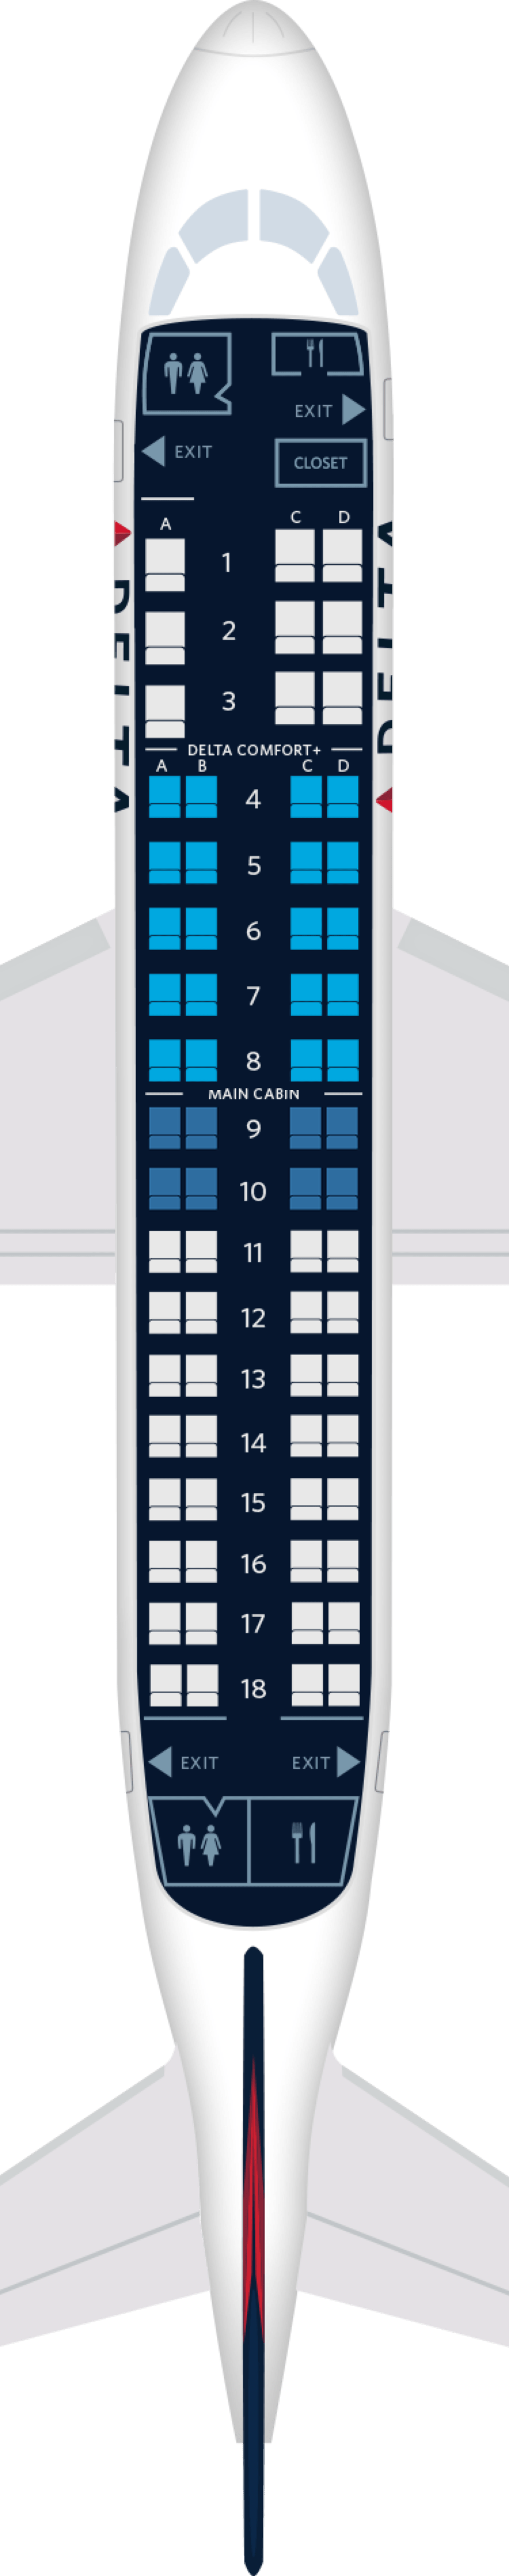 Embraer E-170 Seat Maps, Specs & Amenities | Delta Air Lines